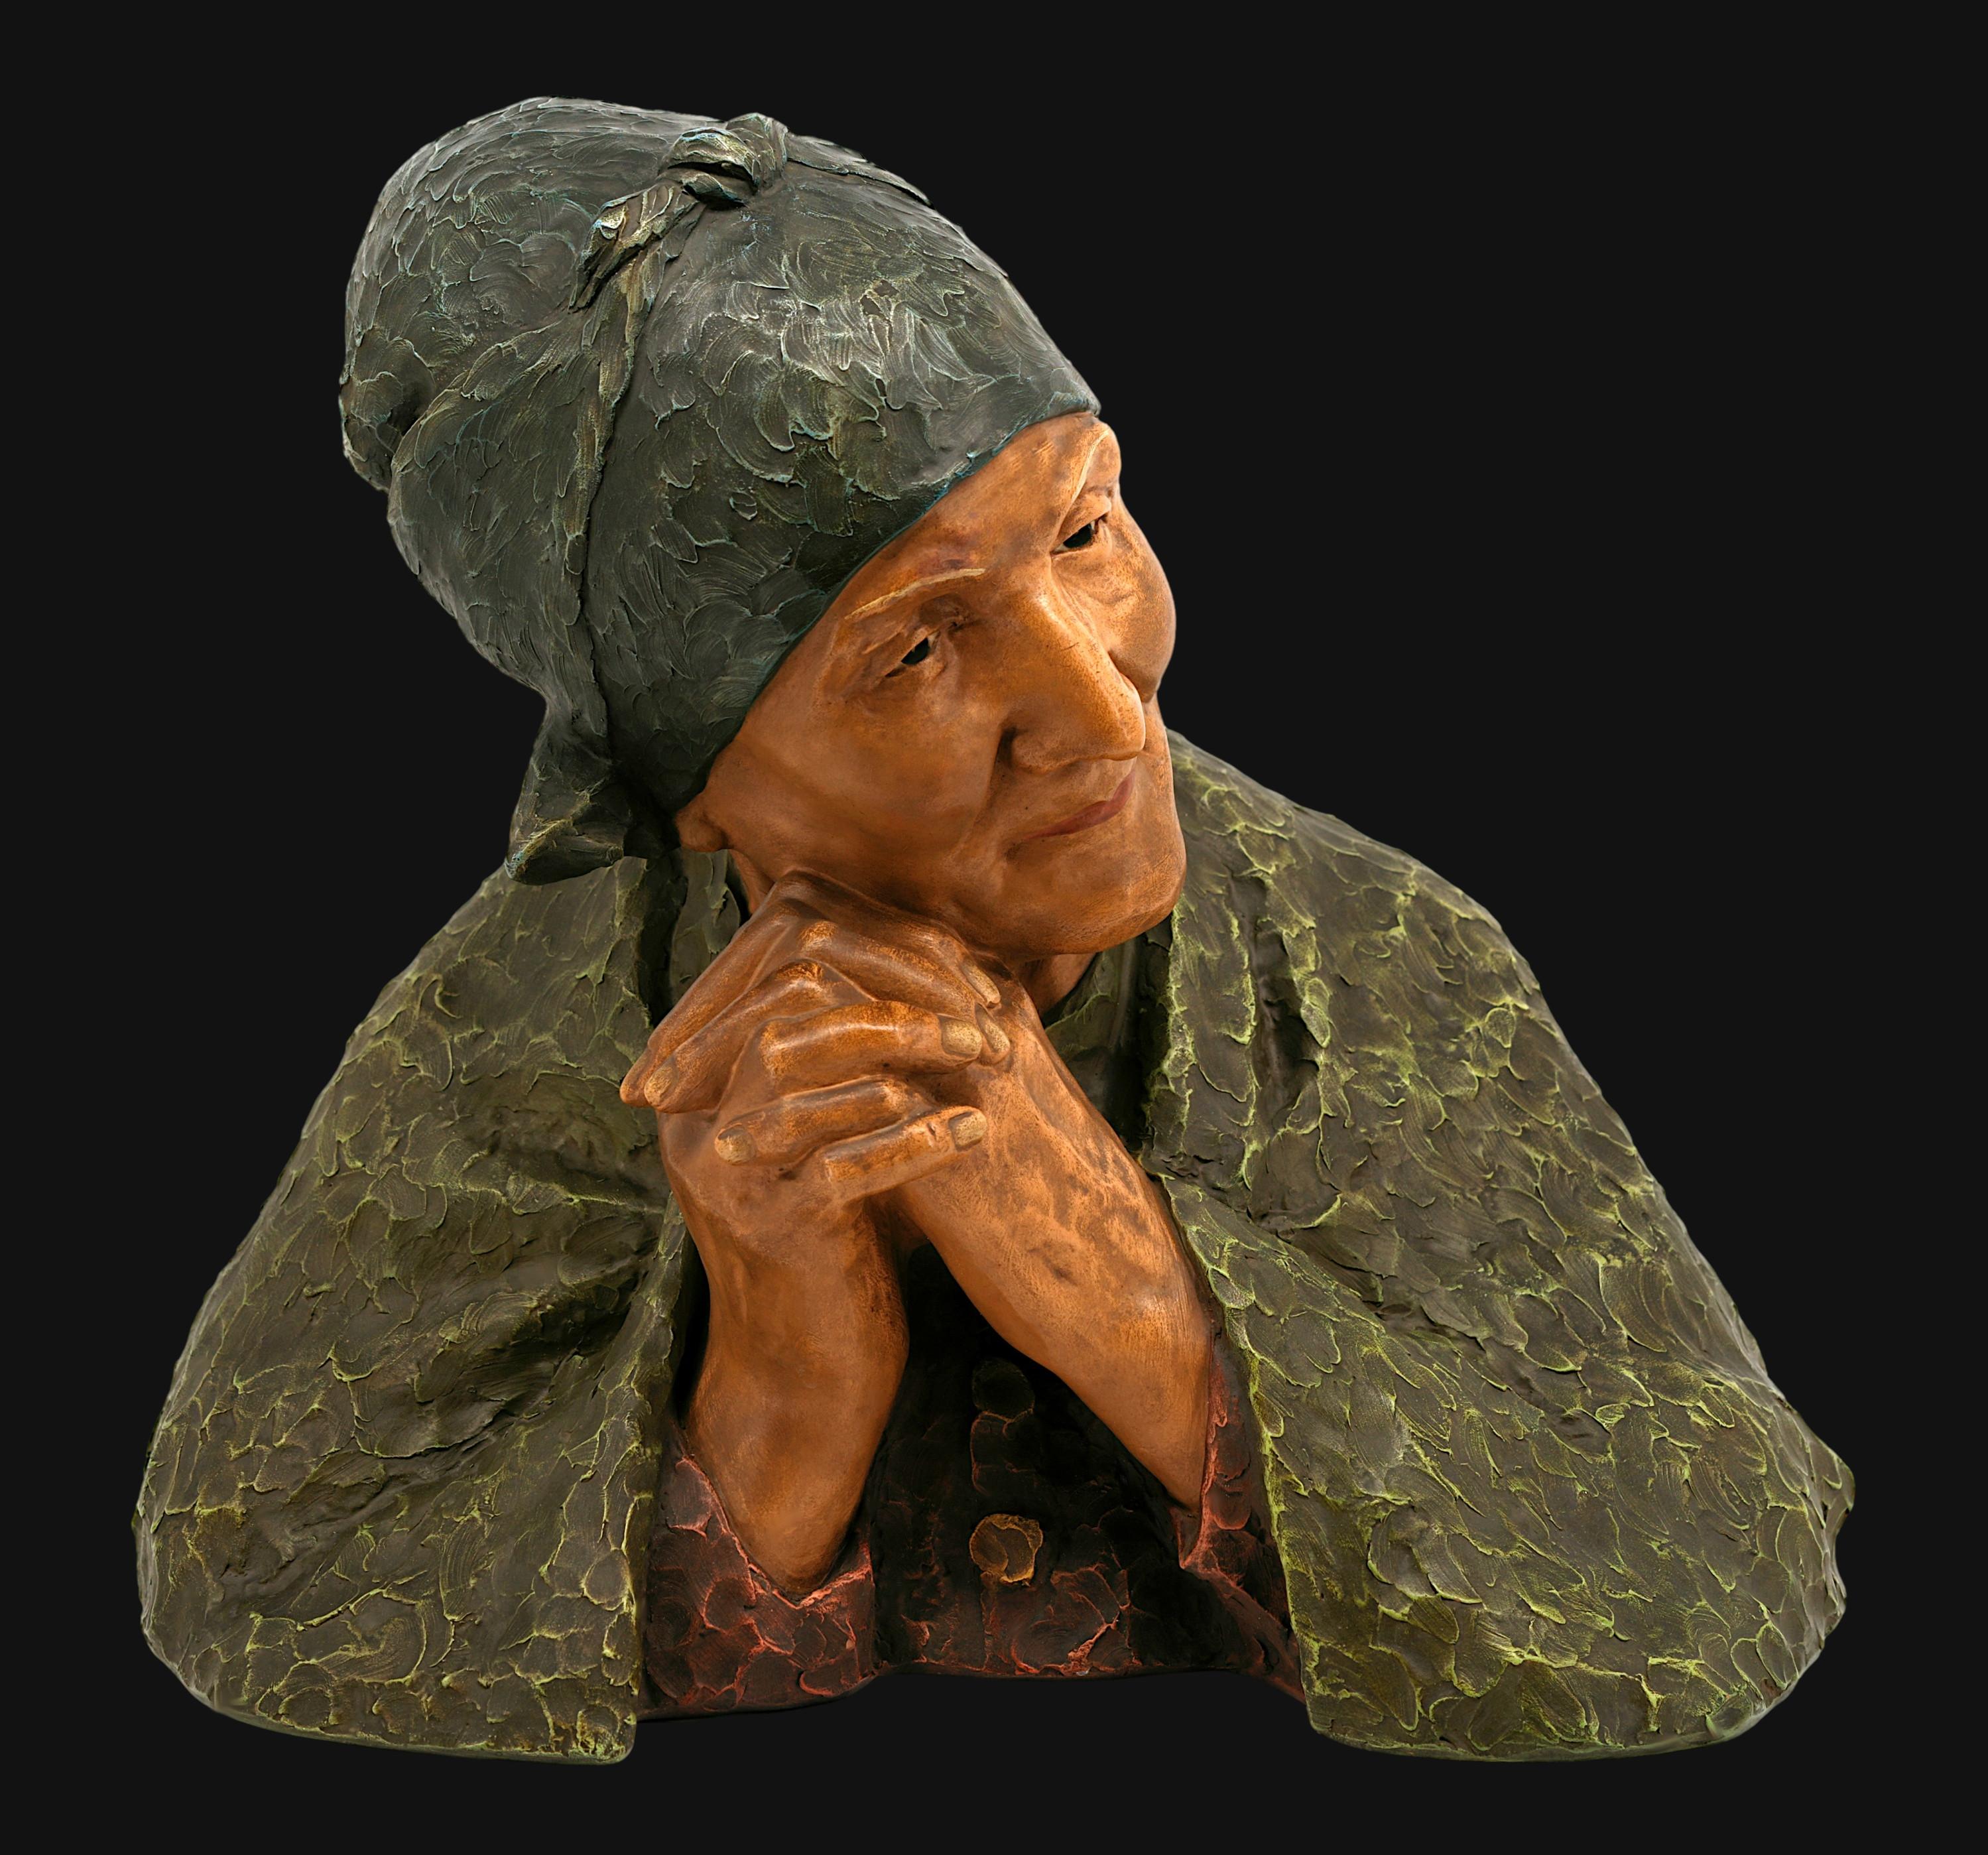 Skulptur einer alten Frau aus Terrakotta von Berthe GIRARDET (1861-1948), Manufacture de l'Isle-Adam  (nördlich von Paris), Frankreich, ca. 1900. Polychrome Terrakotta. Höhe: 16